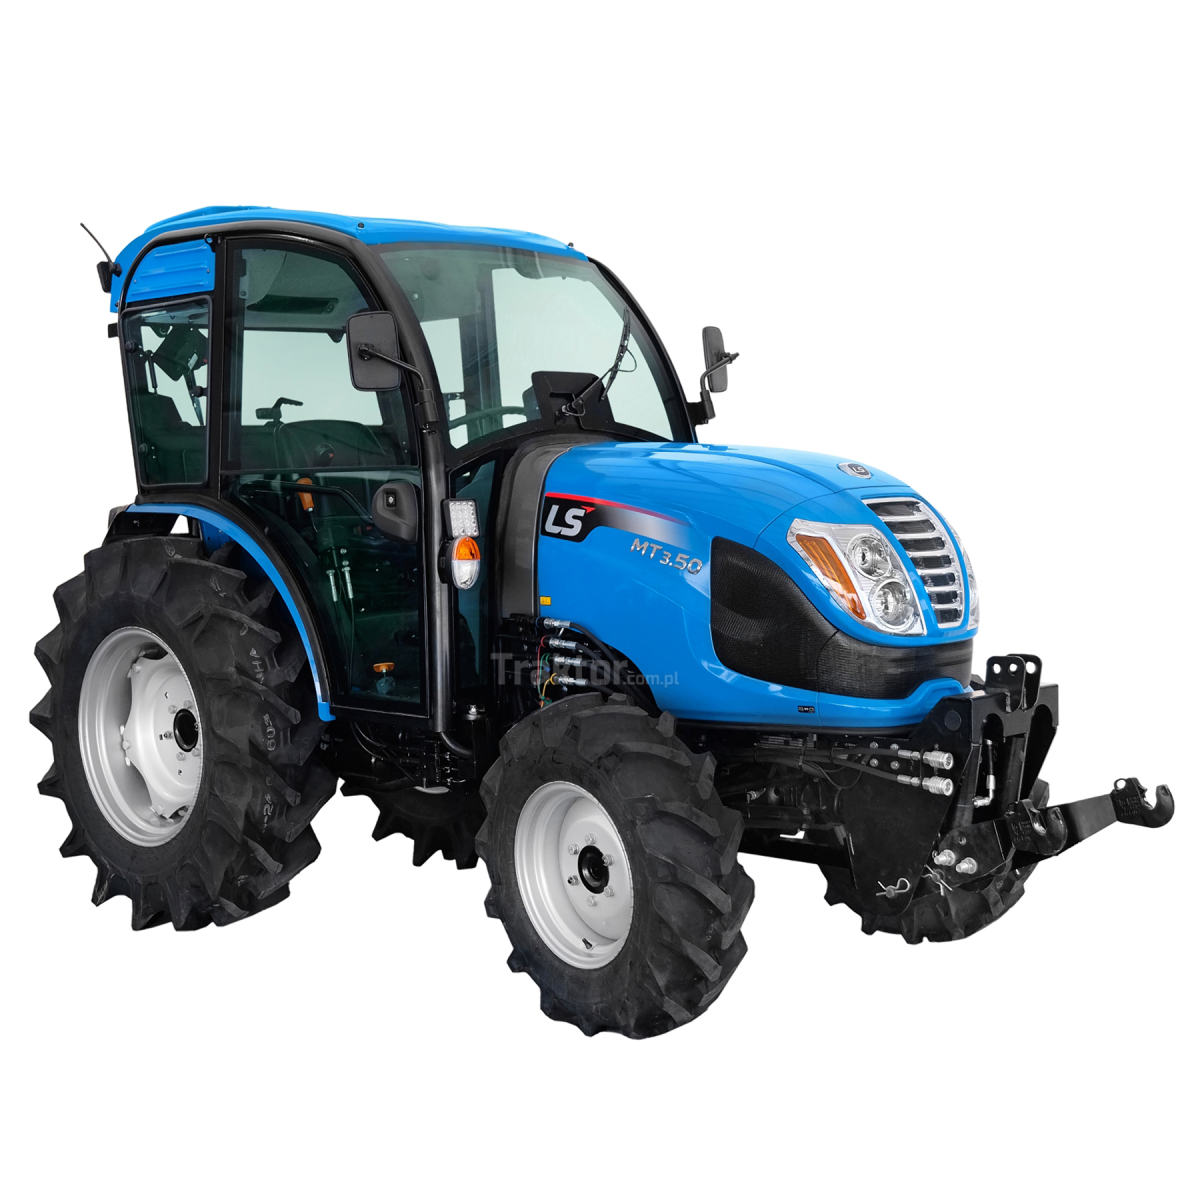 Traktor LS MT3.50 MEC 4x4 - 47 HP / KABÍNA s klimatizáciou + predný záves pre traktor Premium 4FARMER